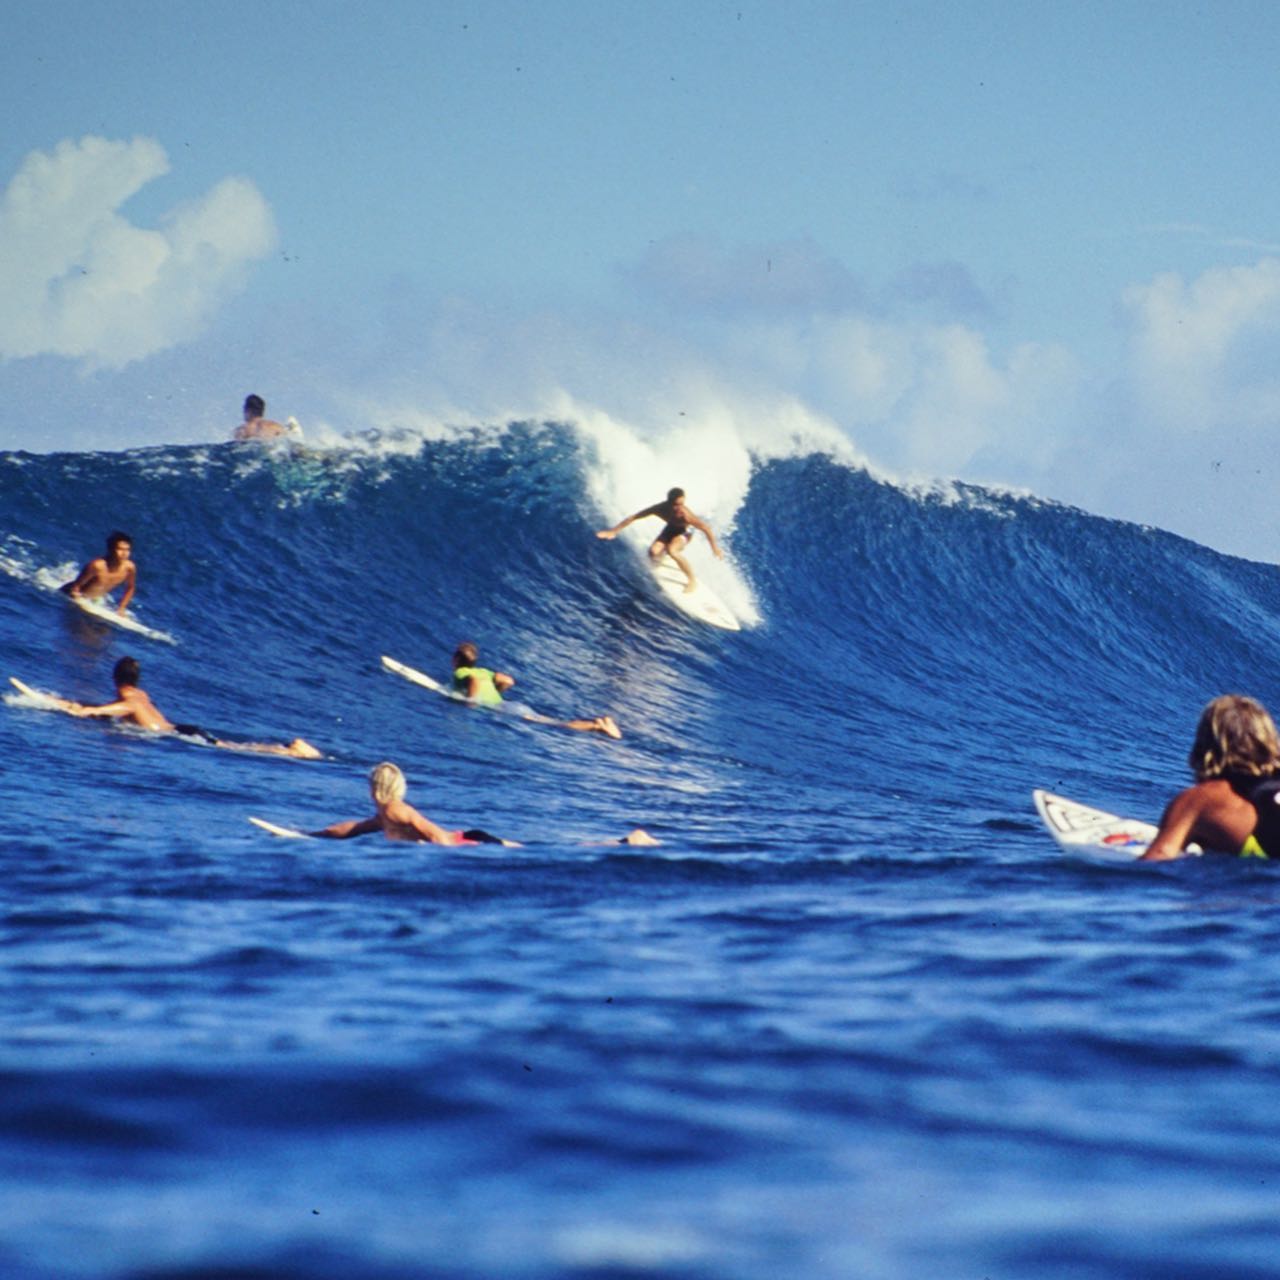 ハワイ・サンセットビーチ 93・アルゼンチンのプロカメラマン"Daniel Baldaさん"に撮って頂いた貴重な水中写真・ハワイ ノースショアは世界中からサーファーが集まり海の中は大混雑・いい波を掴んだ時は注目を集める・カメラマン @feelsmizuguchi さんがこの写真を届けてくれました‍♂️ありがとうございます・2枚目　若笑#過去pic #過去ピク #サーフィン #サーフィンライフ #サーファー #ハワイ #ノースショア #サンセットビーチ